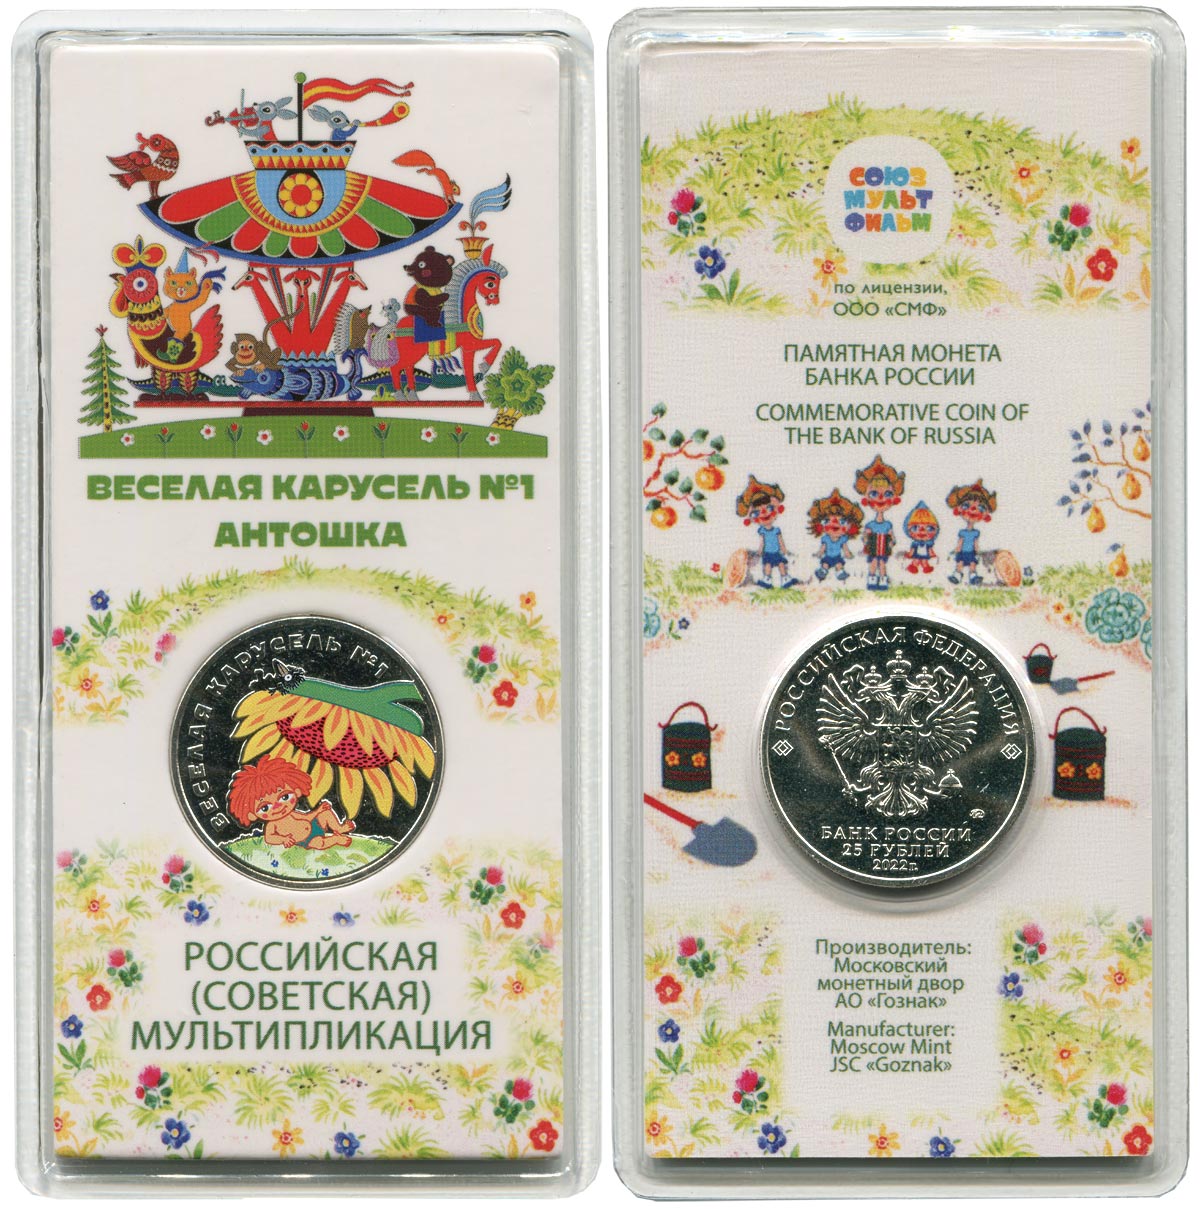 Рис. 10. Пример сувенирной упаковки монеты с цветным покрытием.